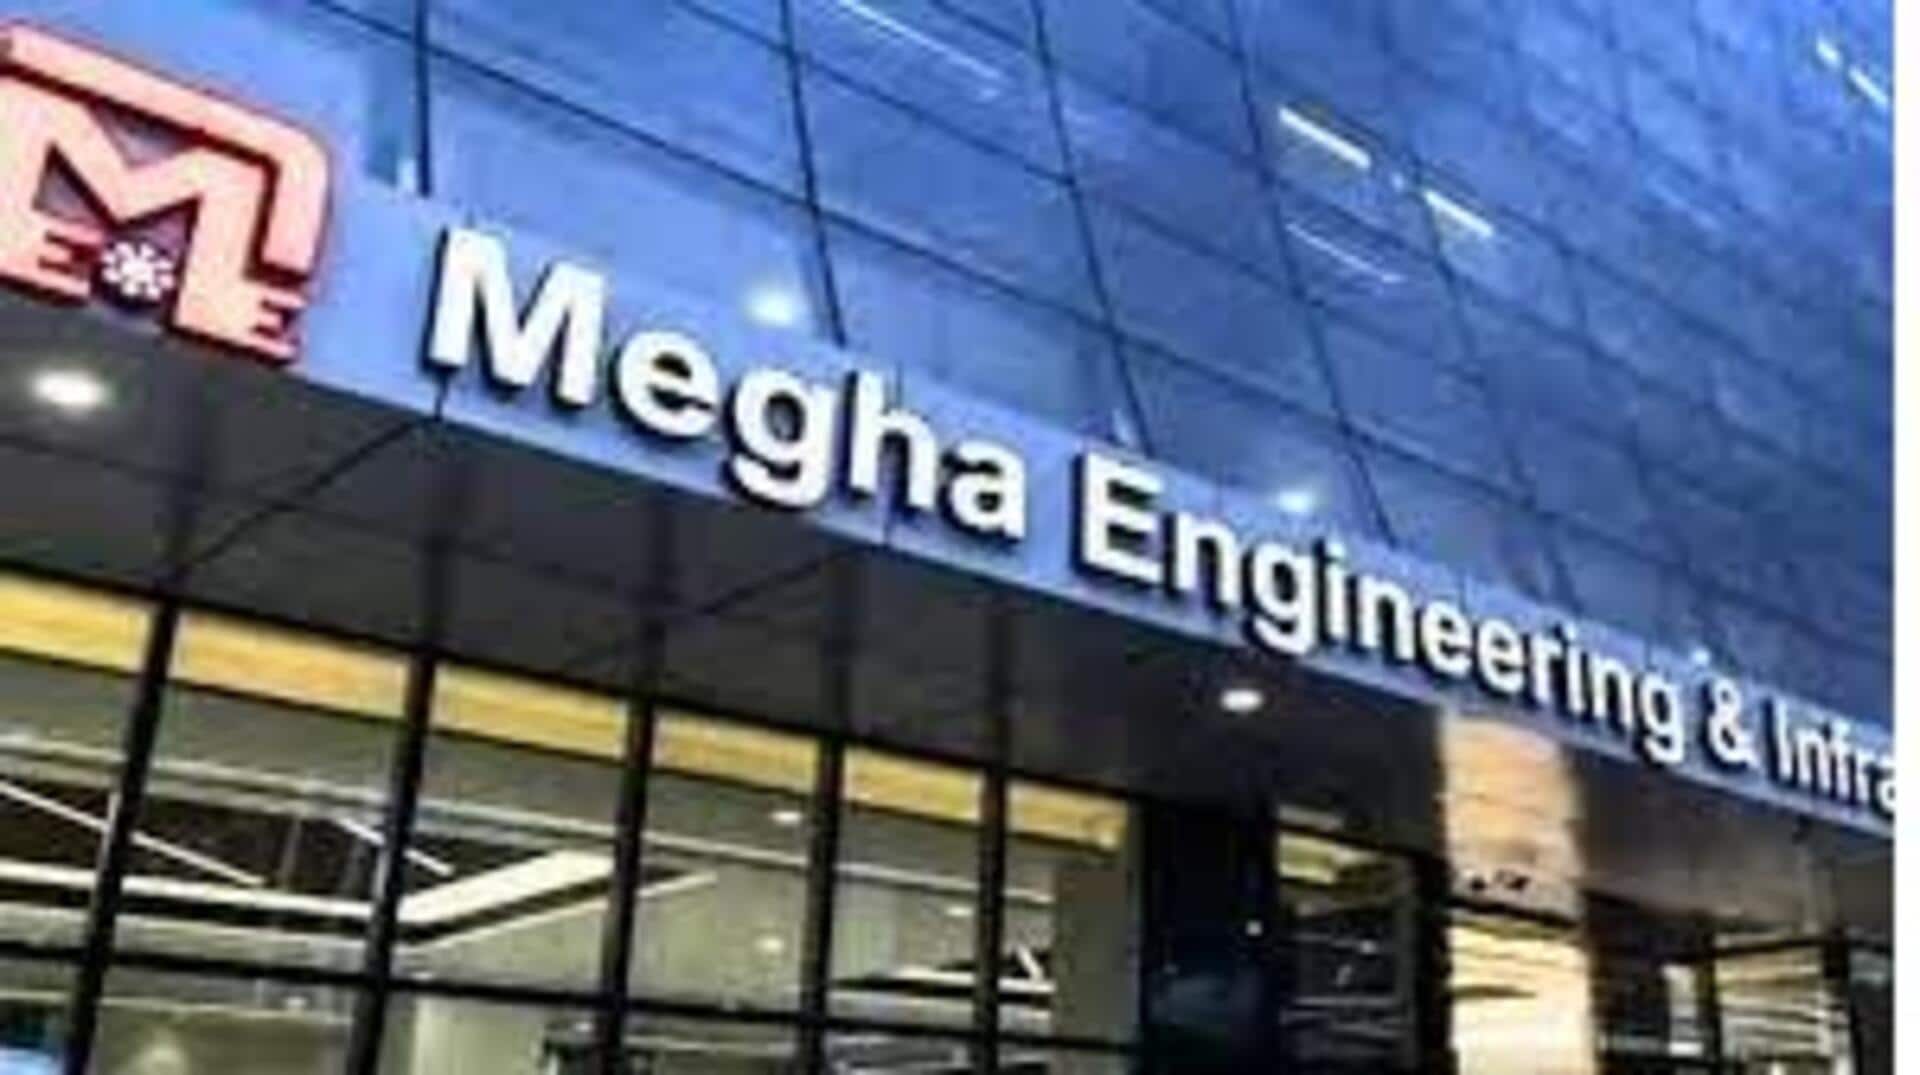 Megha Engineering: మేఘా ఇంజనీరింగ్‌ ఇన్‌ ఫ్రా స్ట్రక్చర్‌ సంస్థపై కేసు నమోదు చేసి సీబీఐ